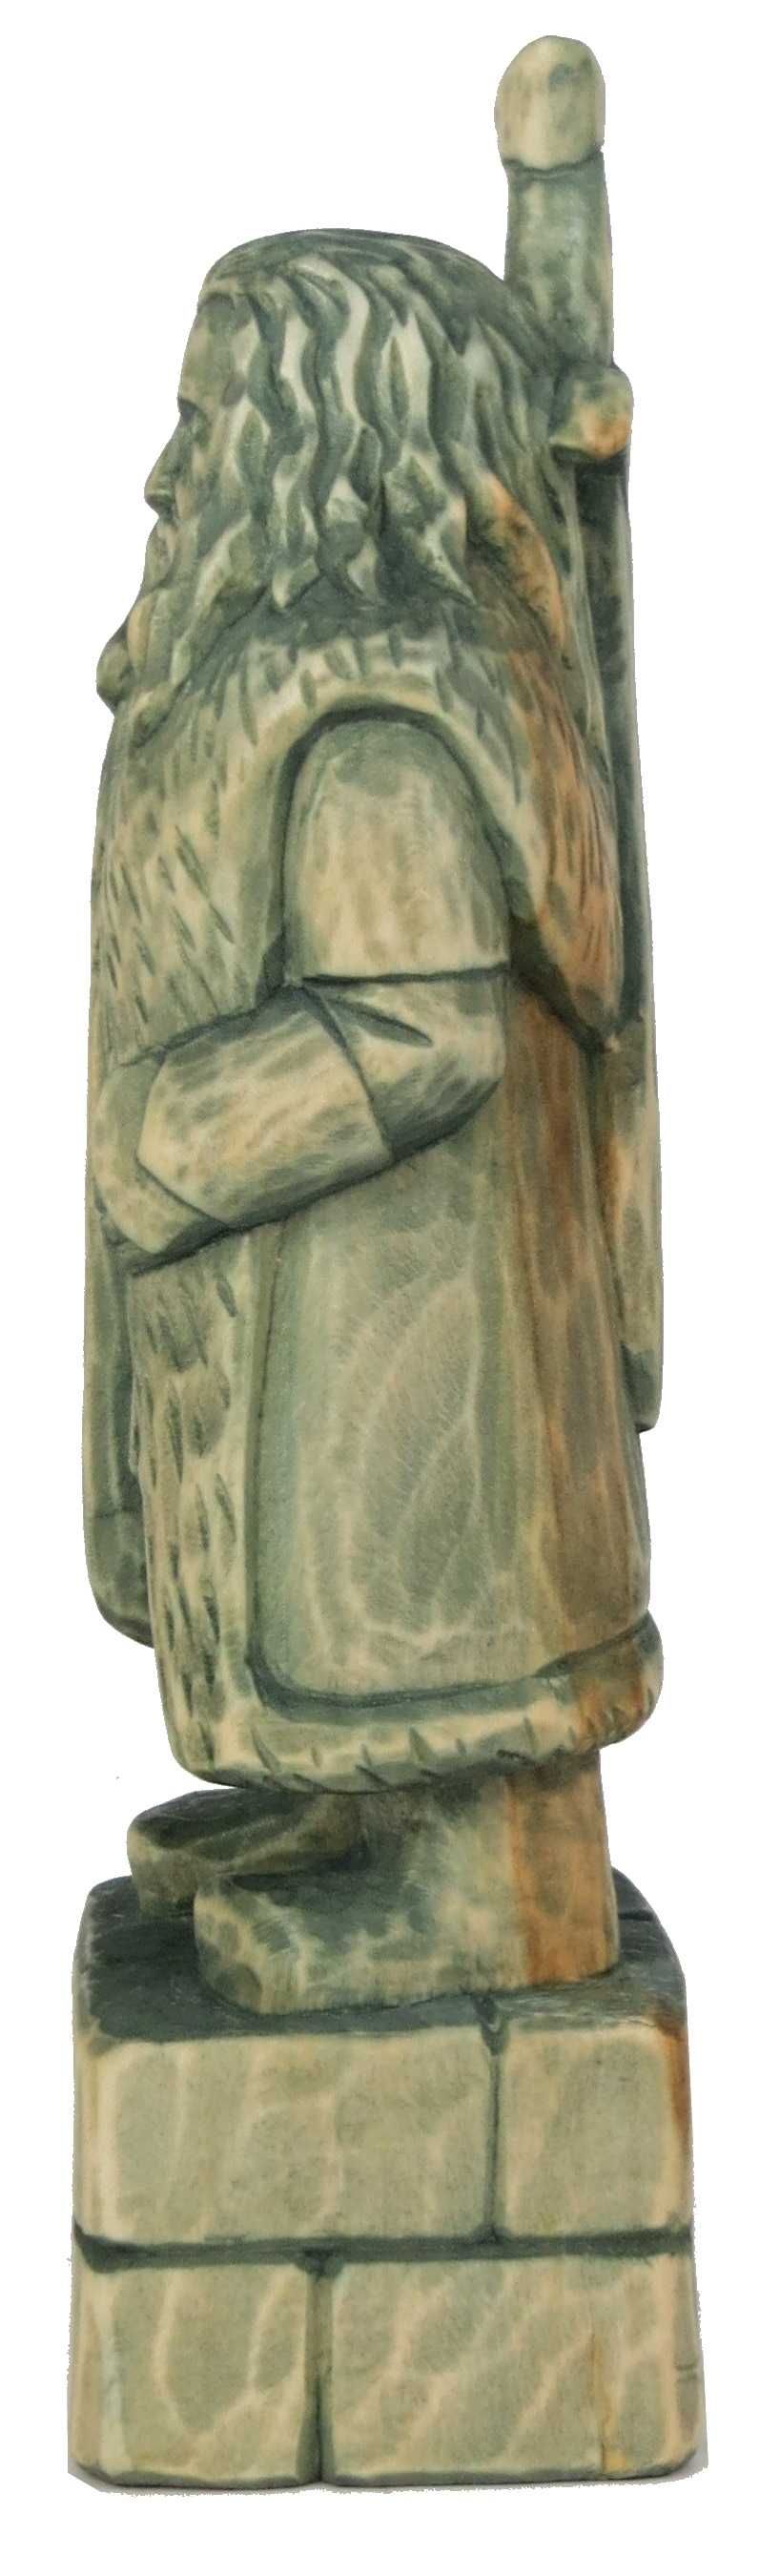 Дерев'яна статуетка ручної роботи гном Торін Дубощит з к/ф Хоббіт